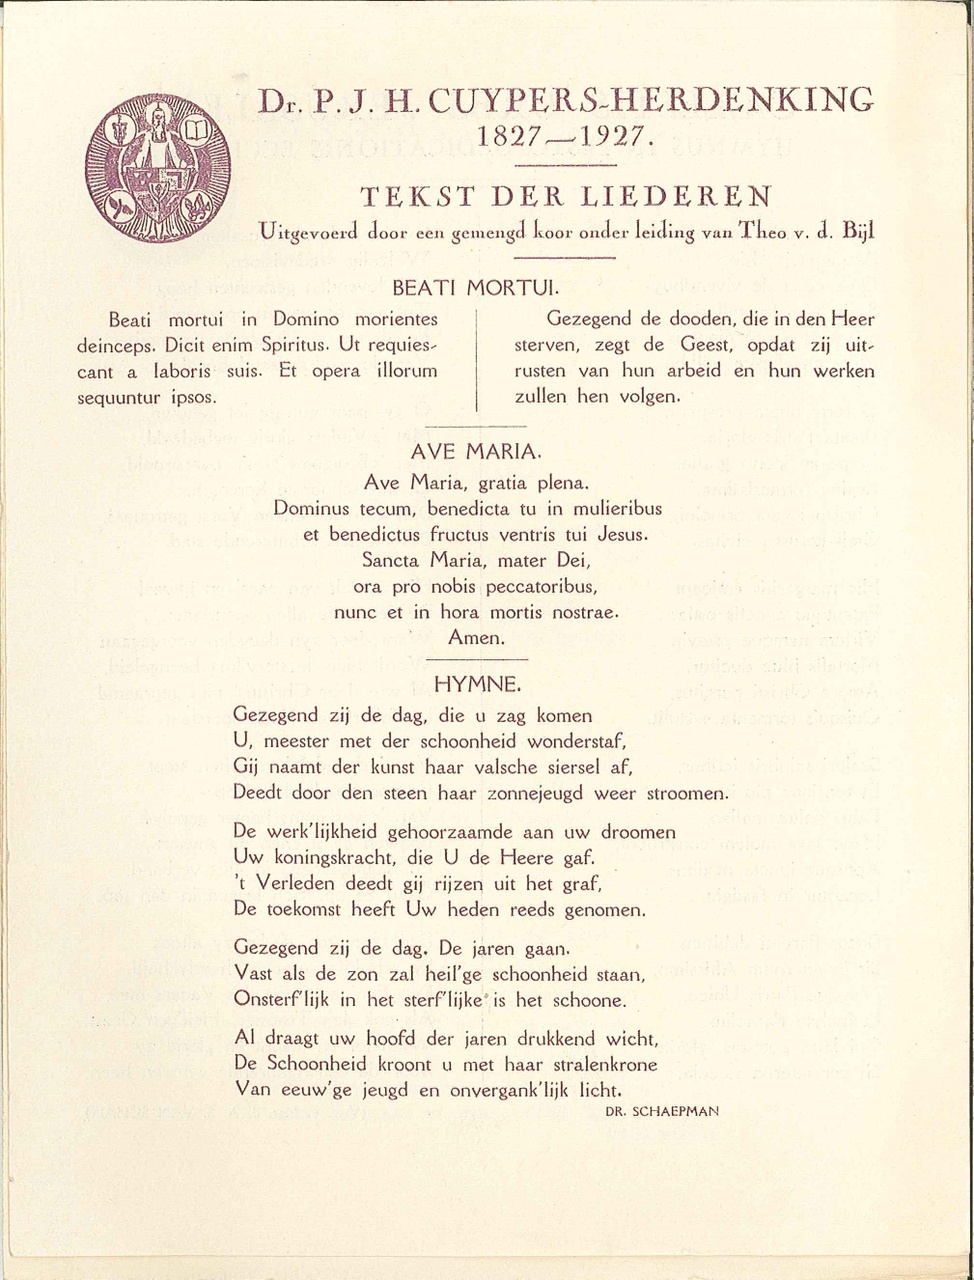 Tekst der liederen,Dhr. P.J.H. Cuypers-herdenking 1827-1927